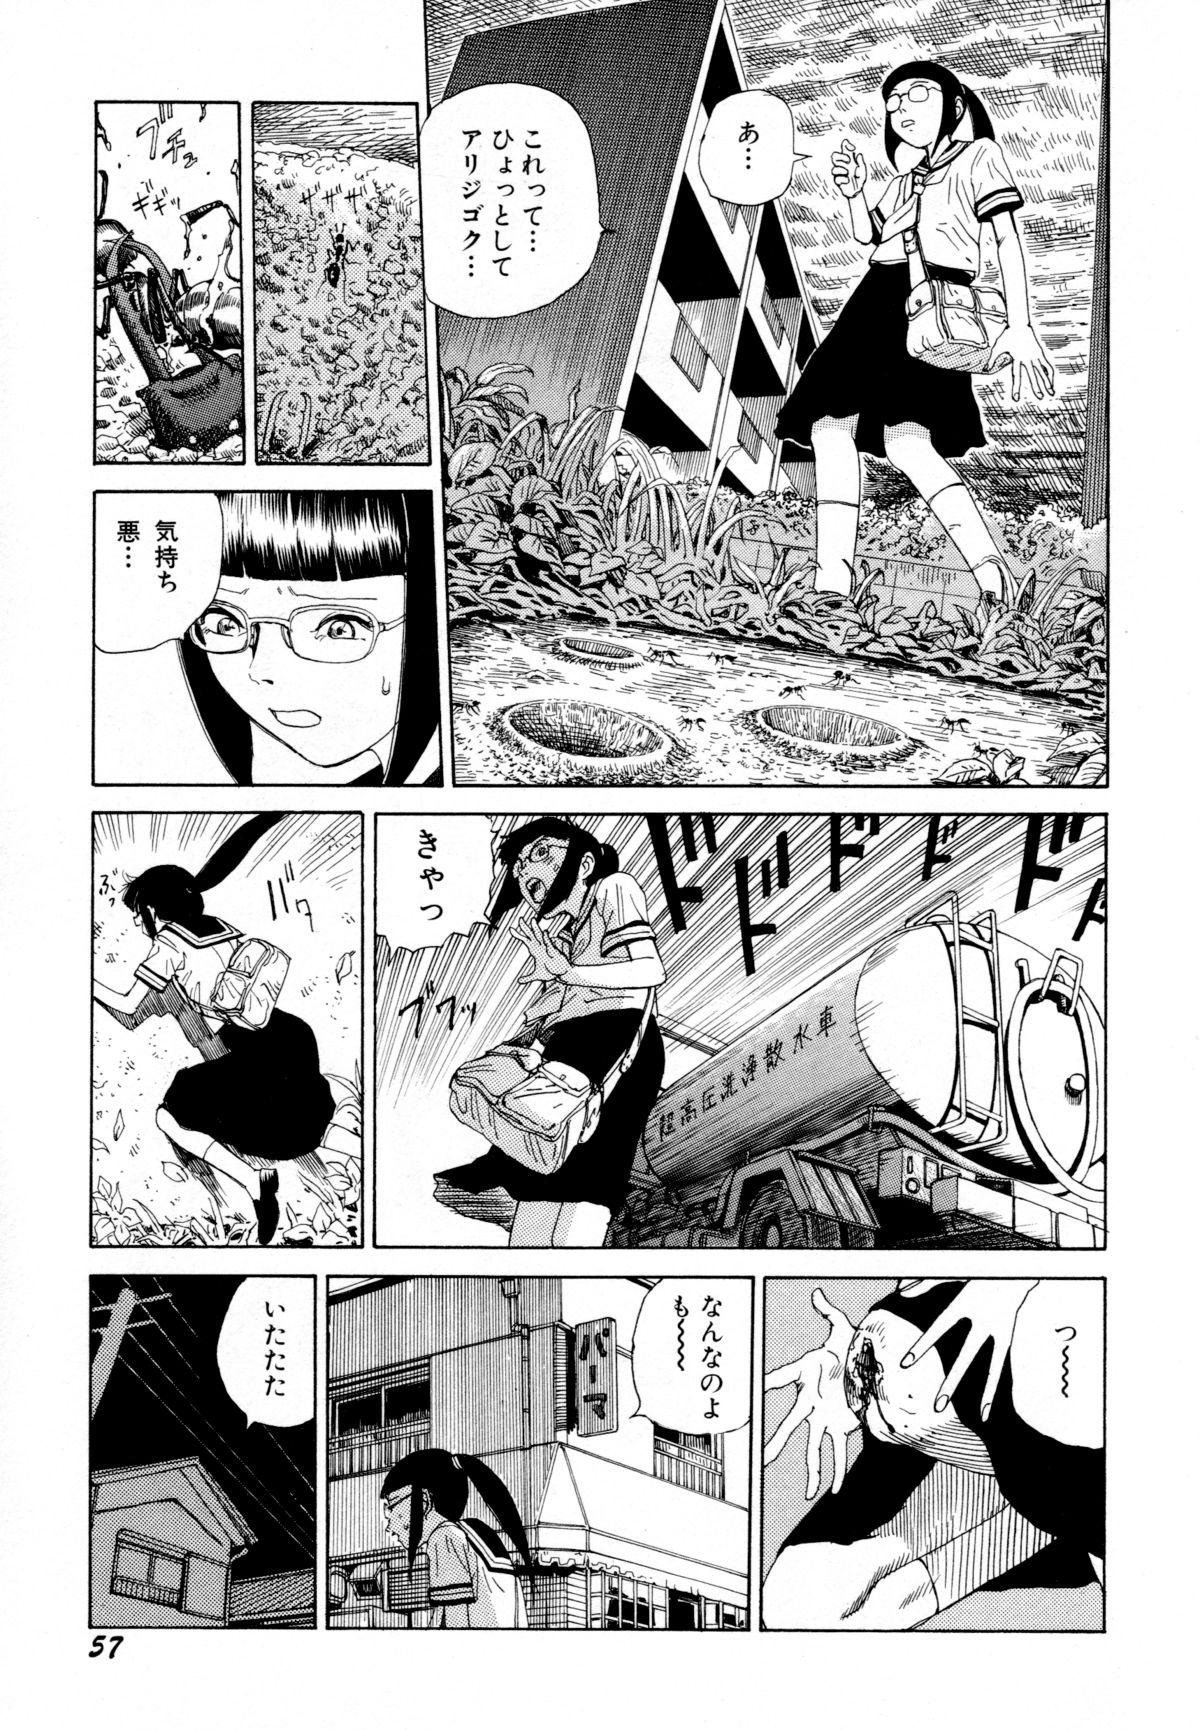 Arijigoku vs Barabara Shoujo - Antlion vs BaraBara Girl 58